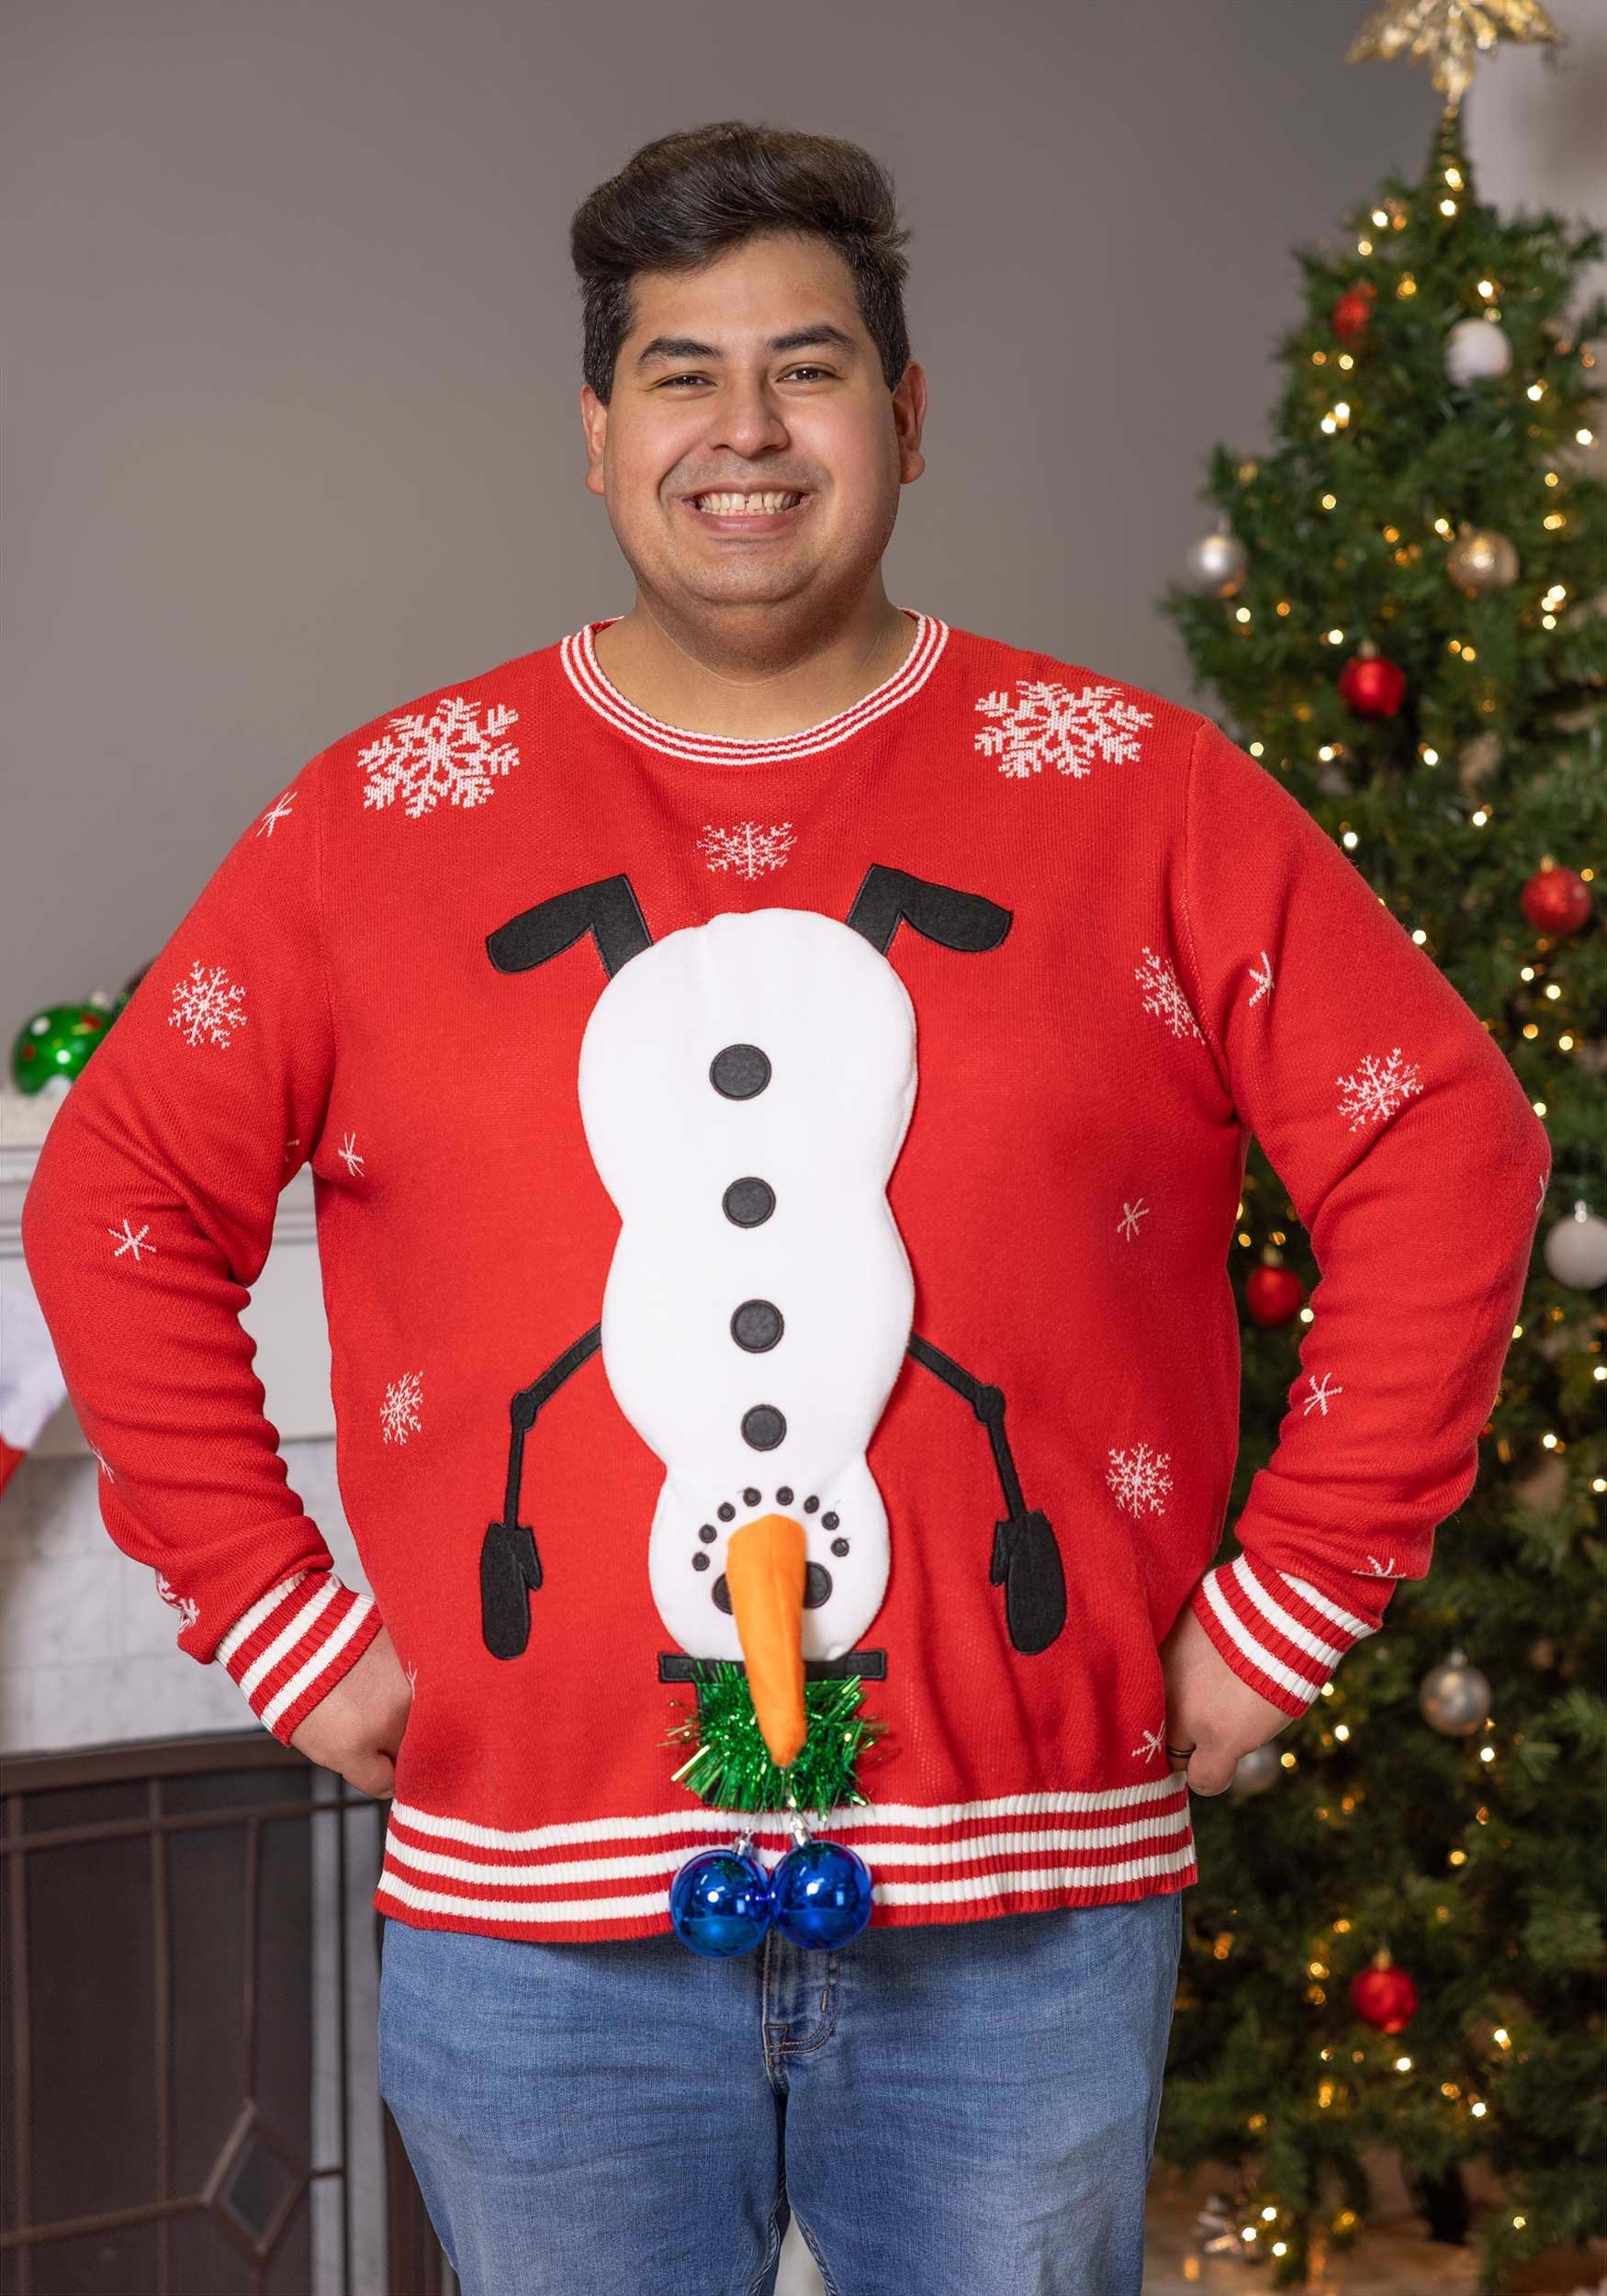 Men's Santa vs Shark Ugly Christmas Costume Sweater